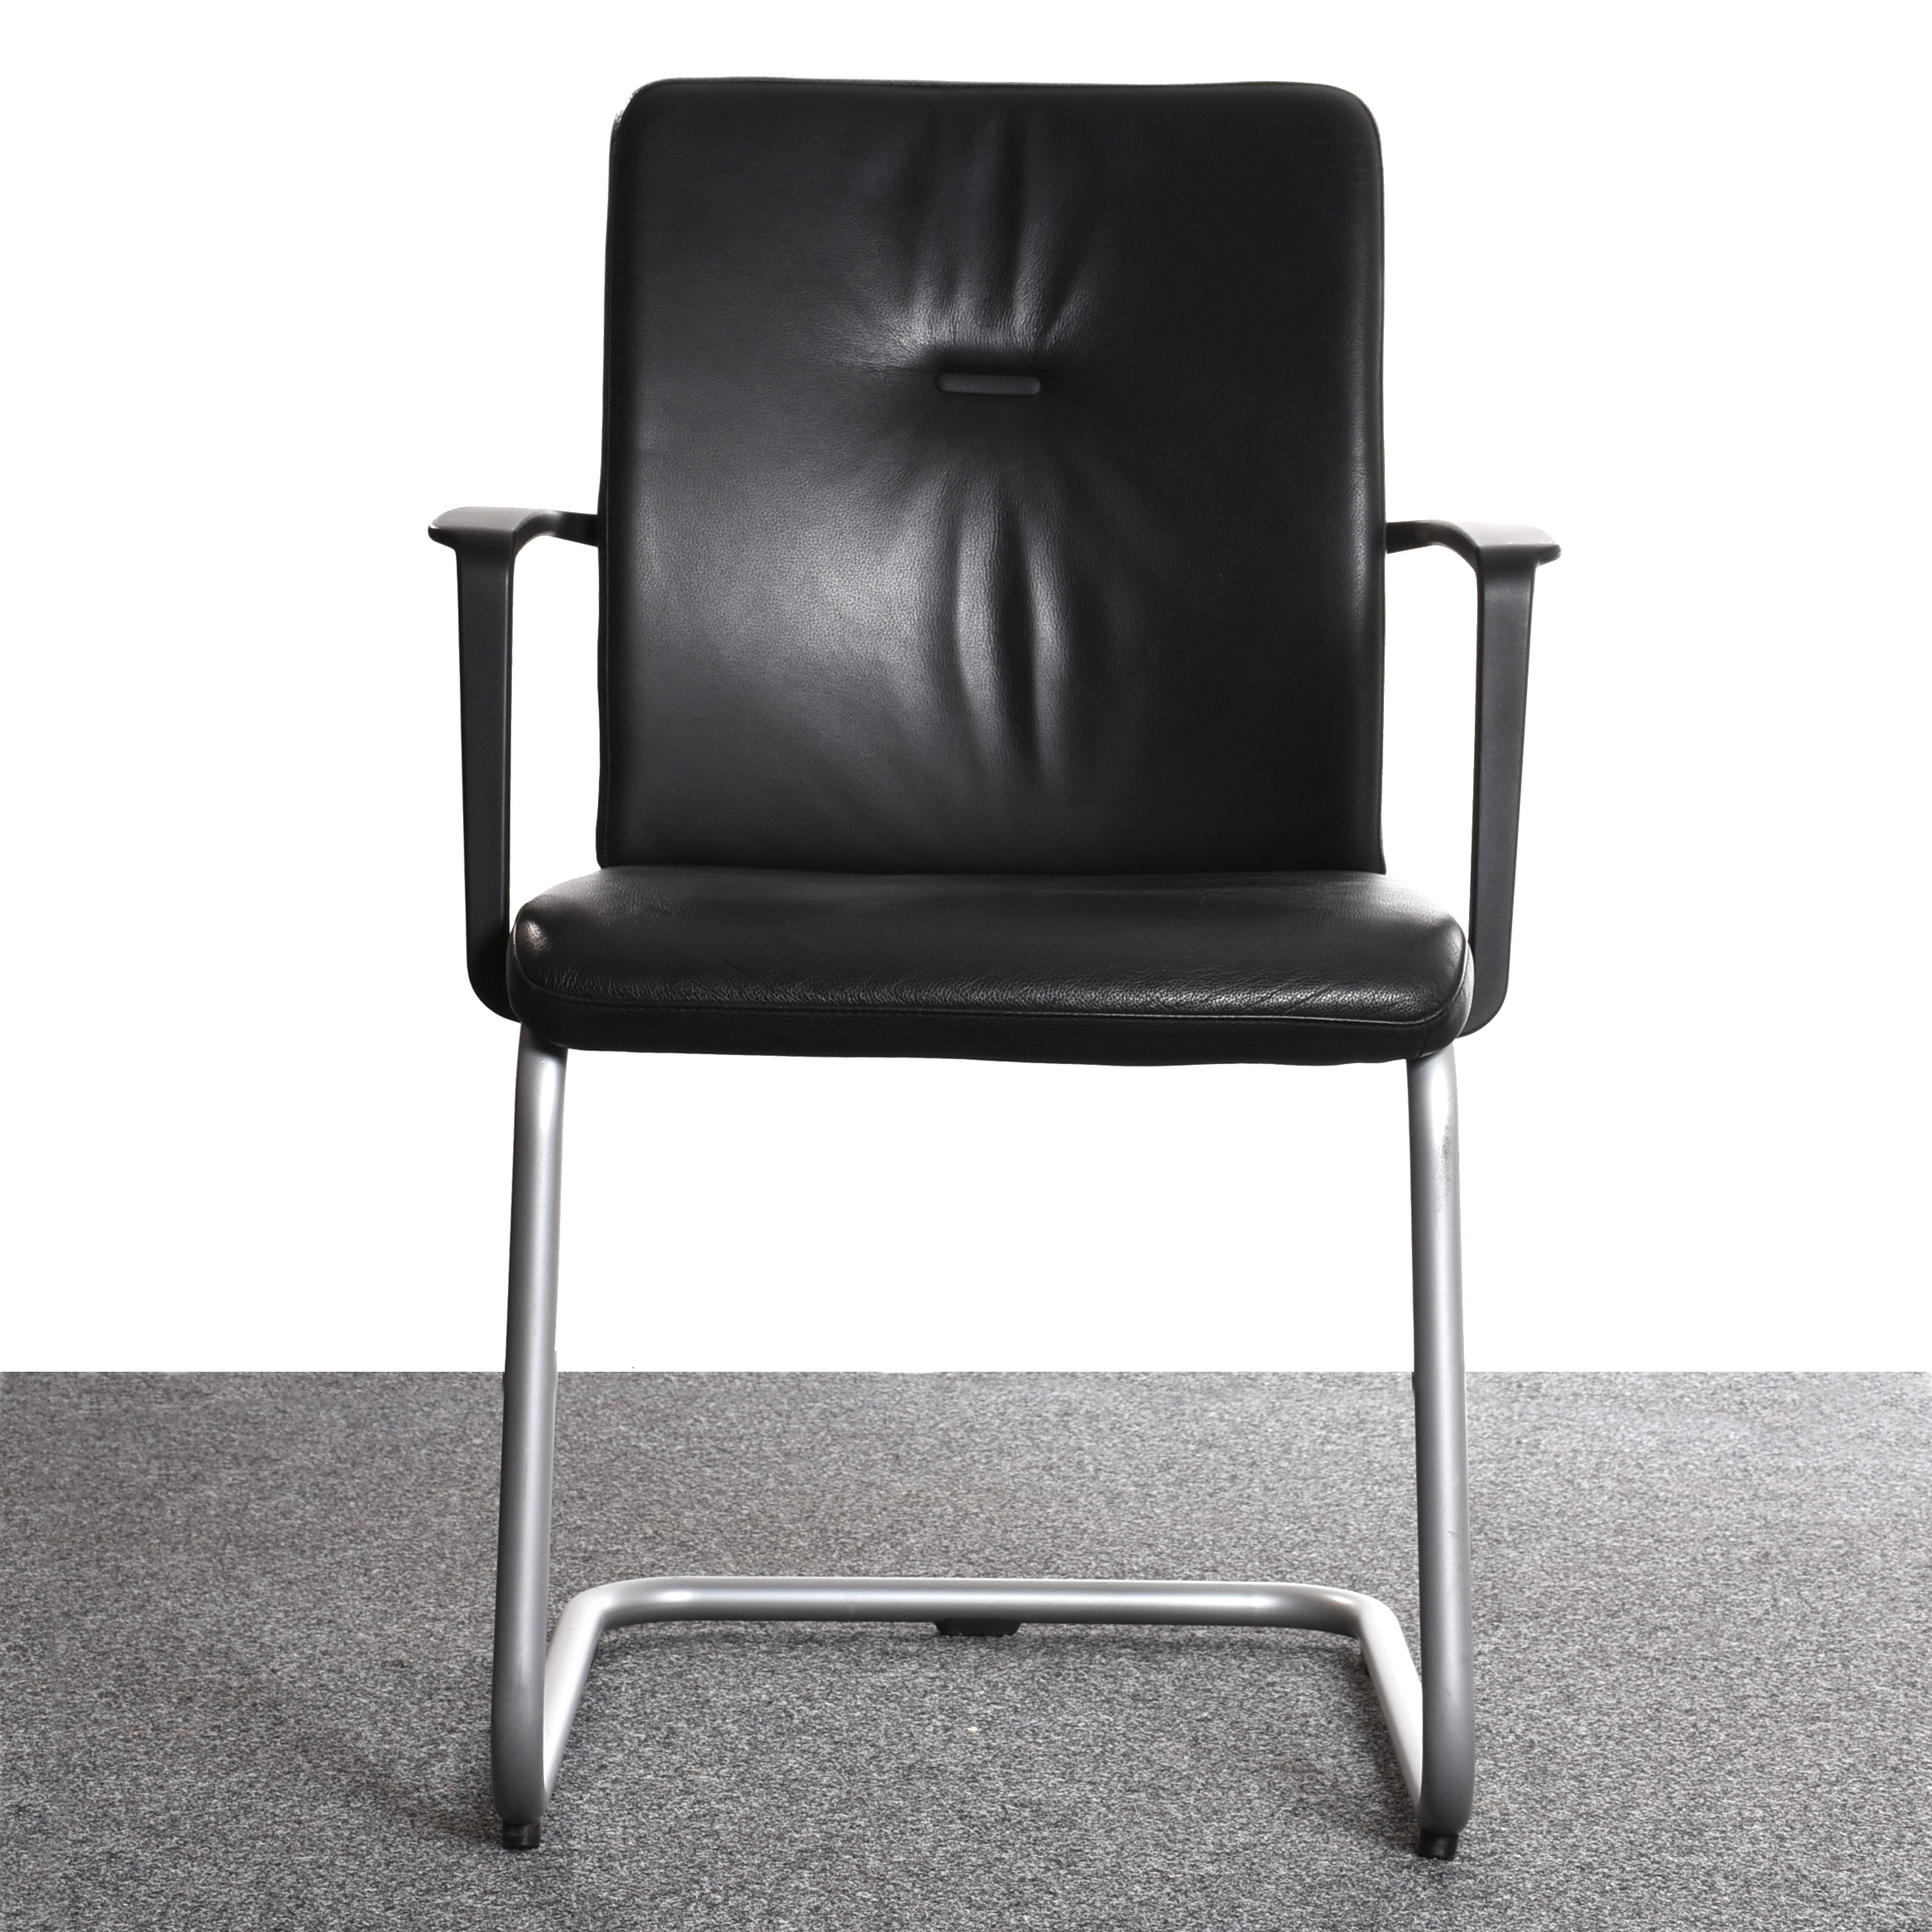 Steelcase Stuhl, Freischwinger, Kunstleder schwarz, Zierknopf im Rücken, Gestell silber, gebraucht